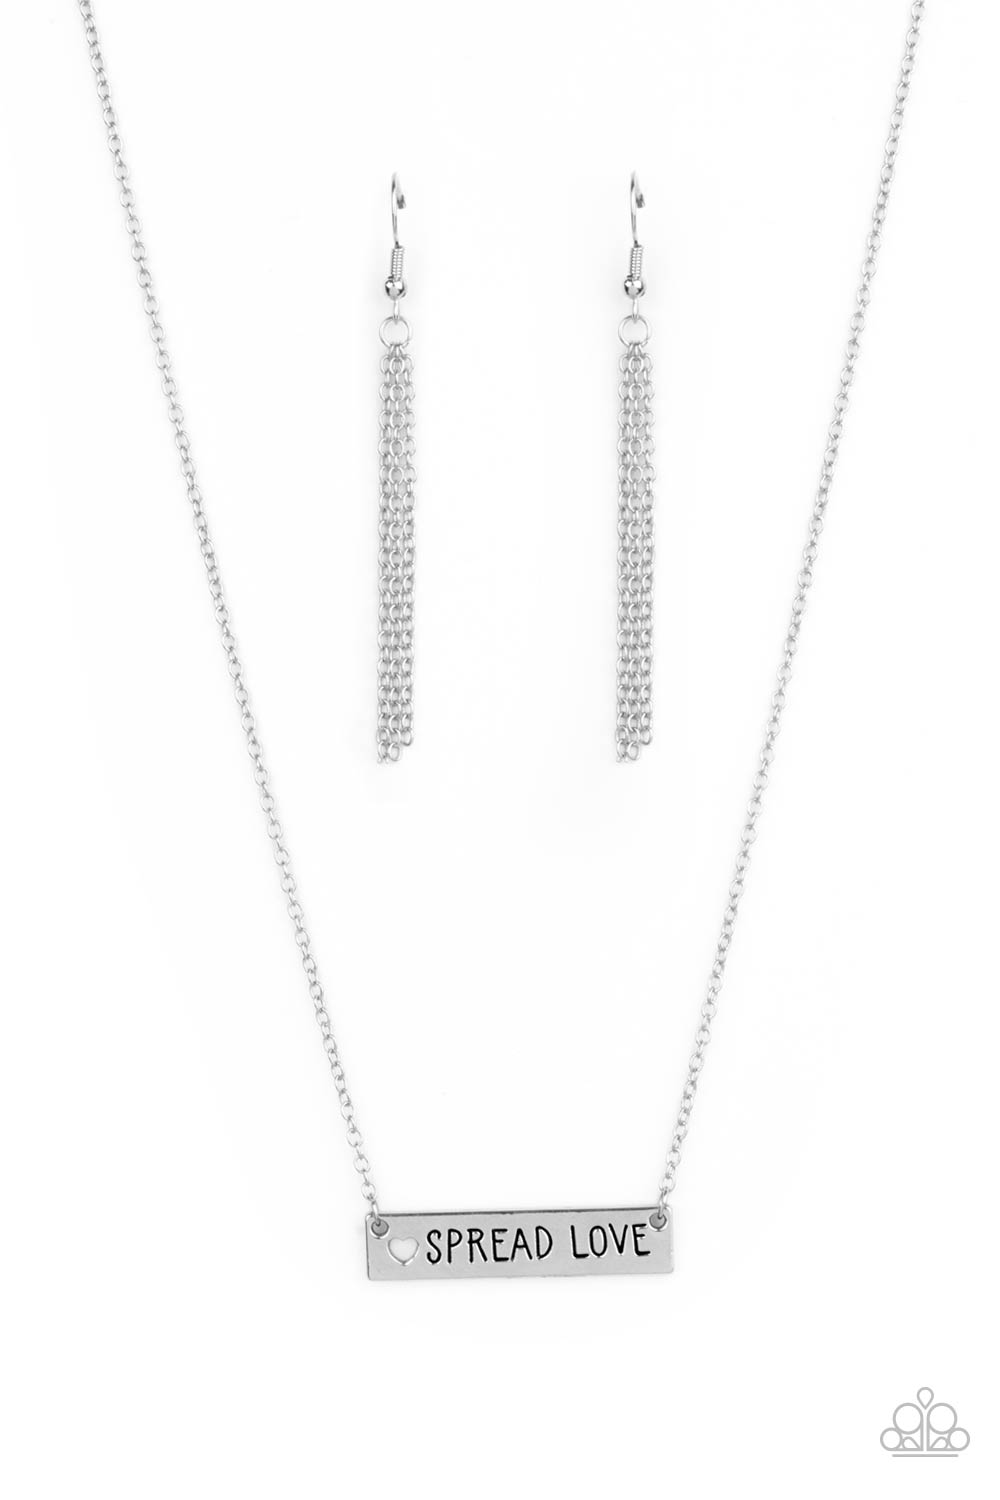 Spread Love Necklace (Brass, Silver, Copper)